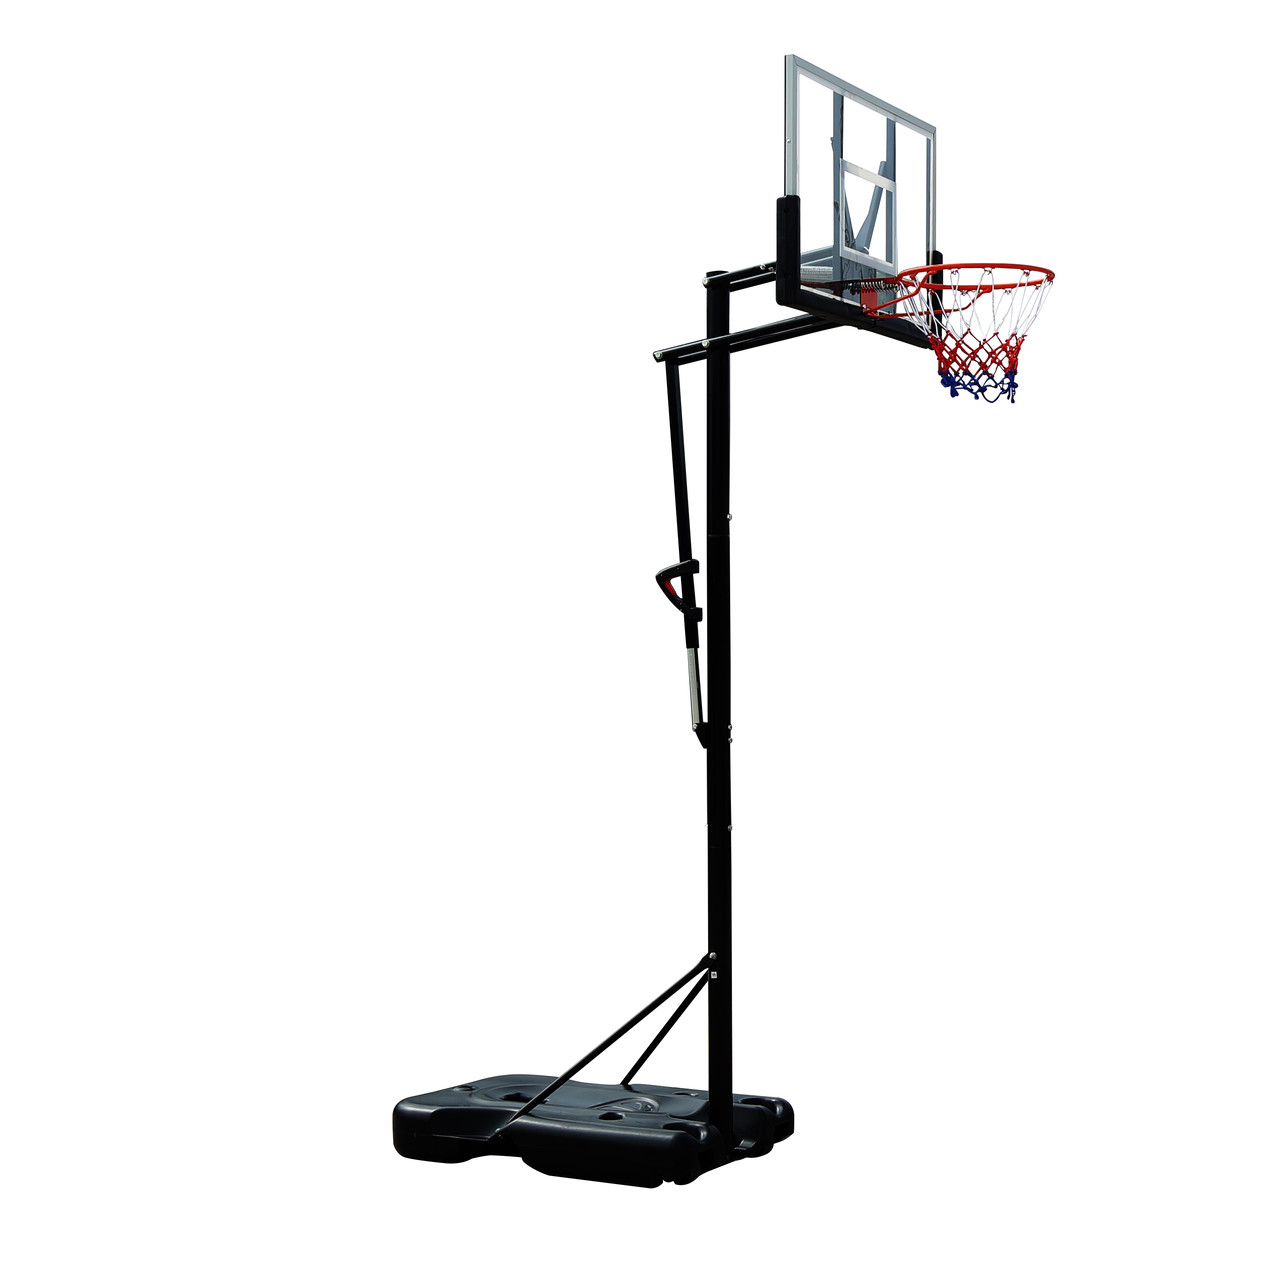 Баскетбольная стойка M021, фото 1